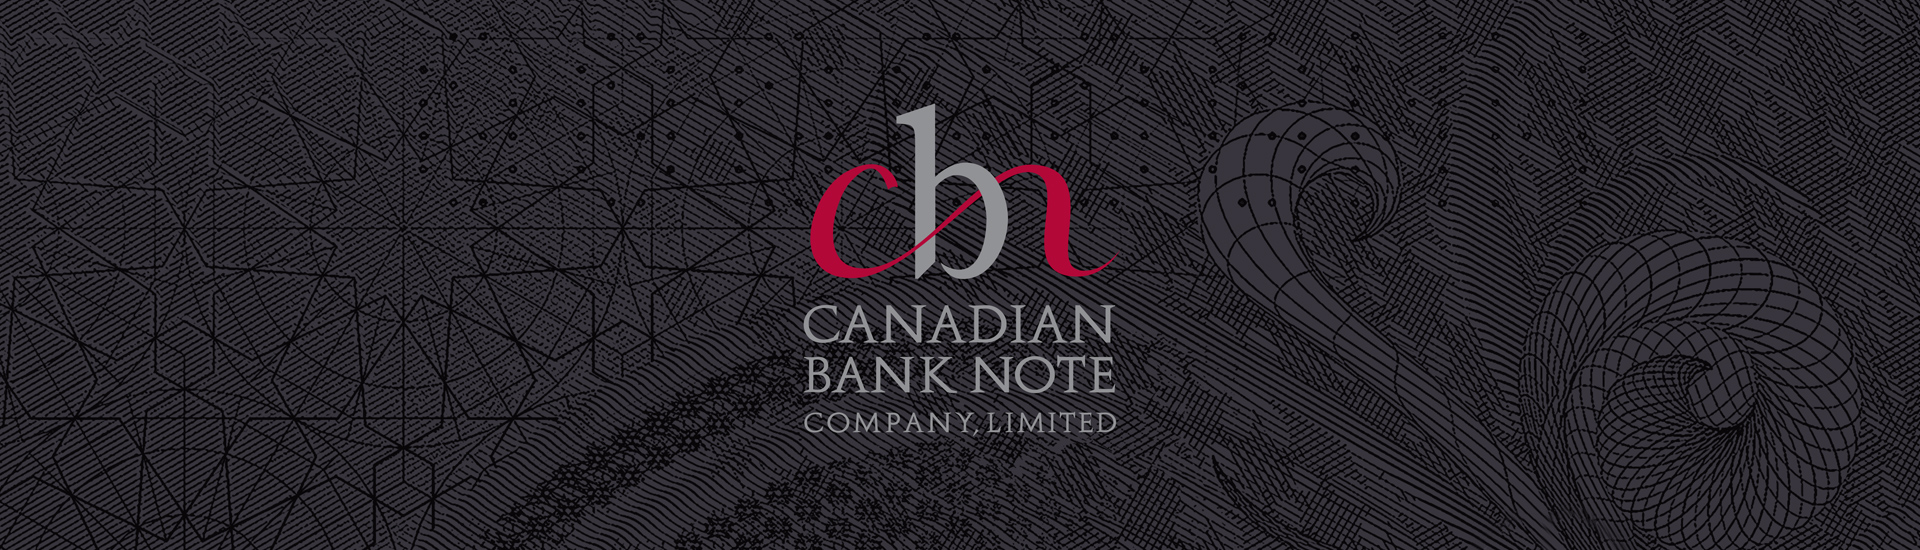 Canadian Bank Note événement corporatif